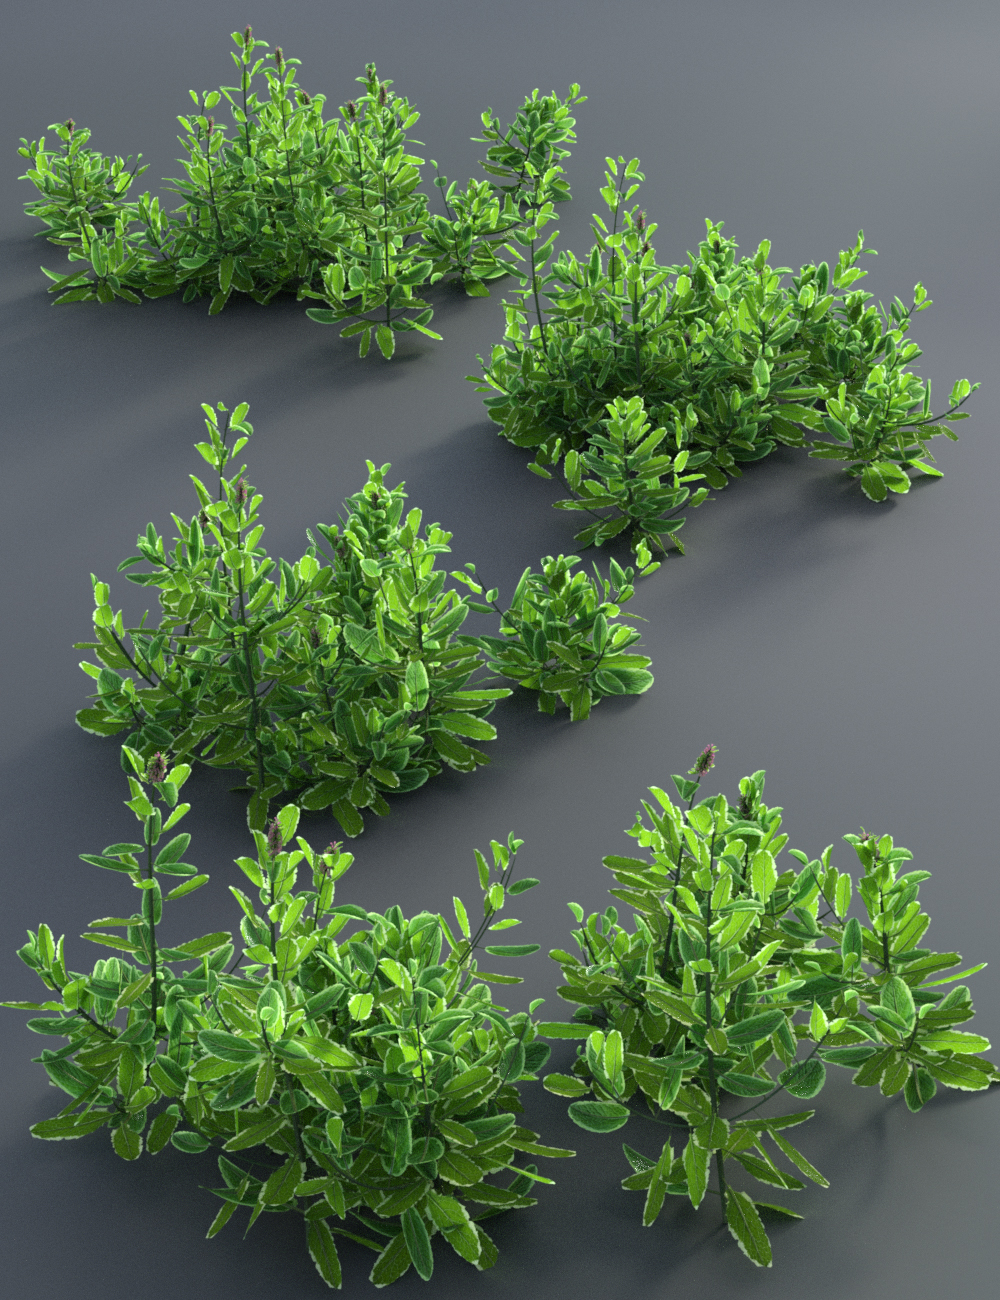 Garden Plants - Herbs Vol 2 by: MartinJFrost, 3D Models by Daz 3D